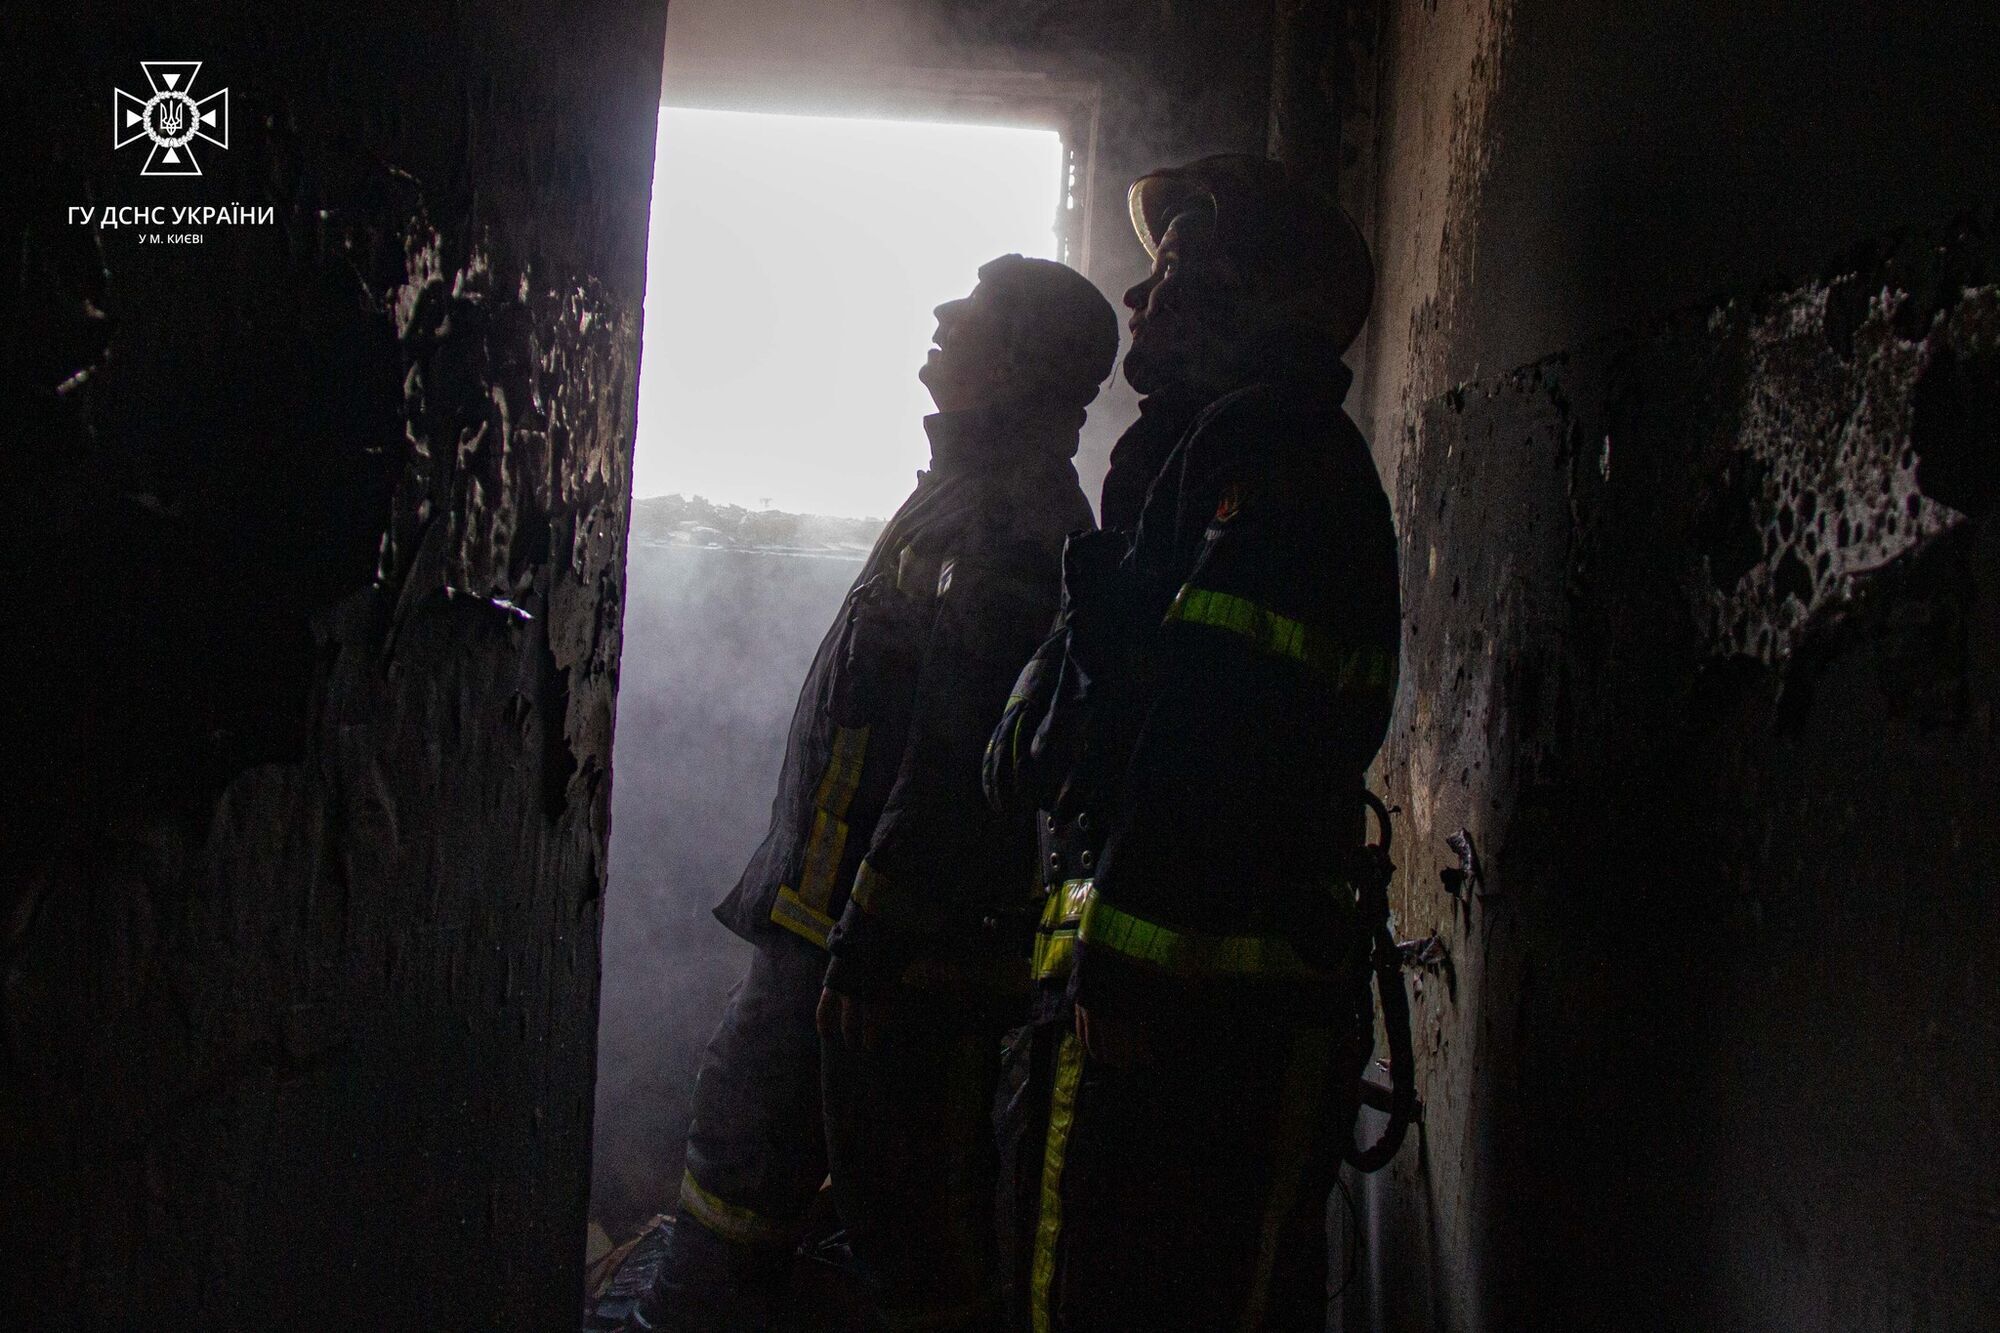 В Киеве во время пожара в многоэтажке пострадал мужчина, пытавшийся самостоятельно потушить огонь. Фото